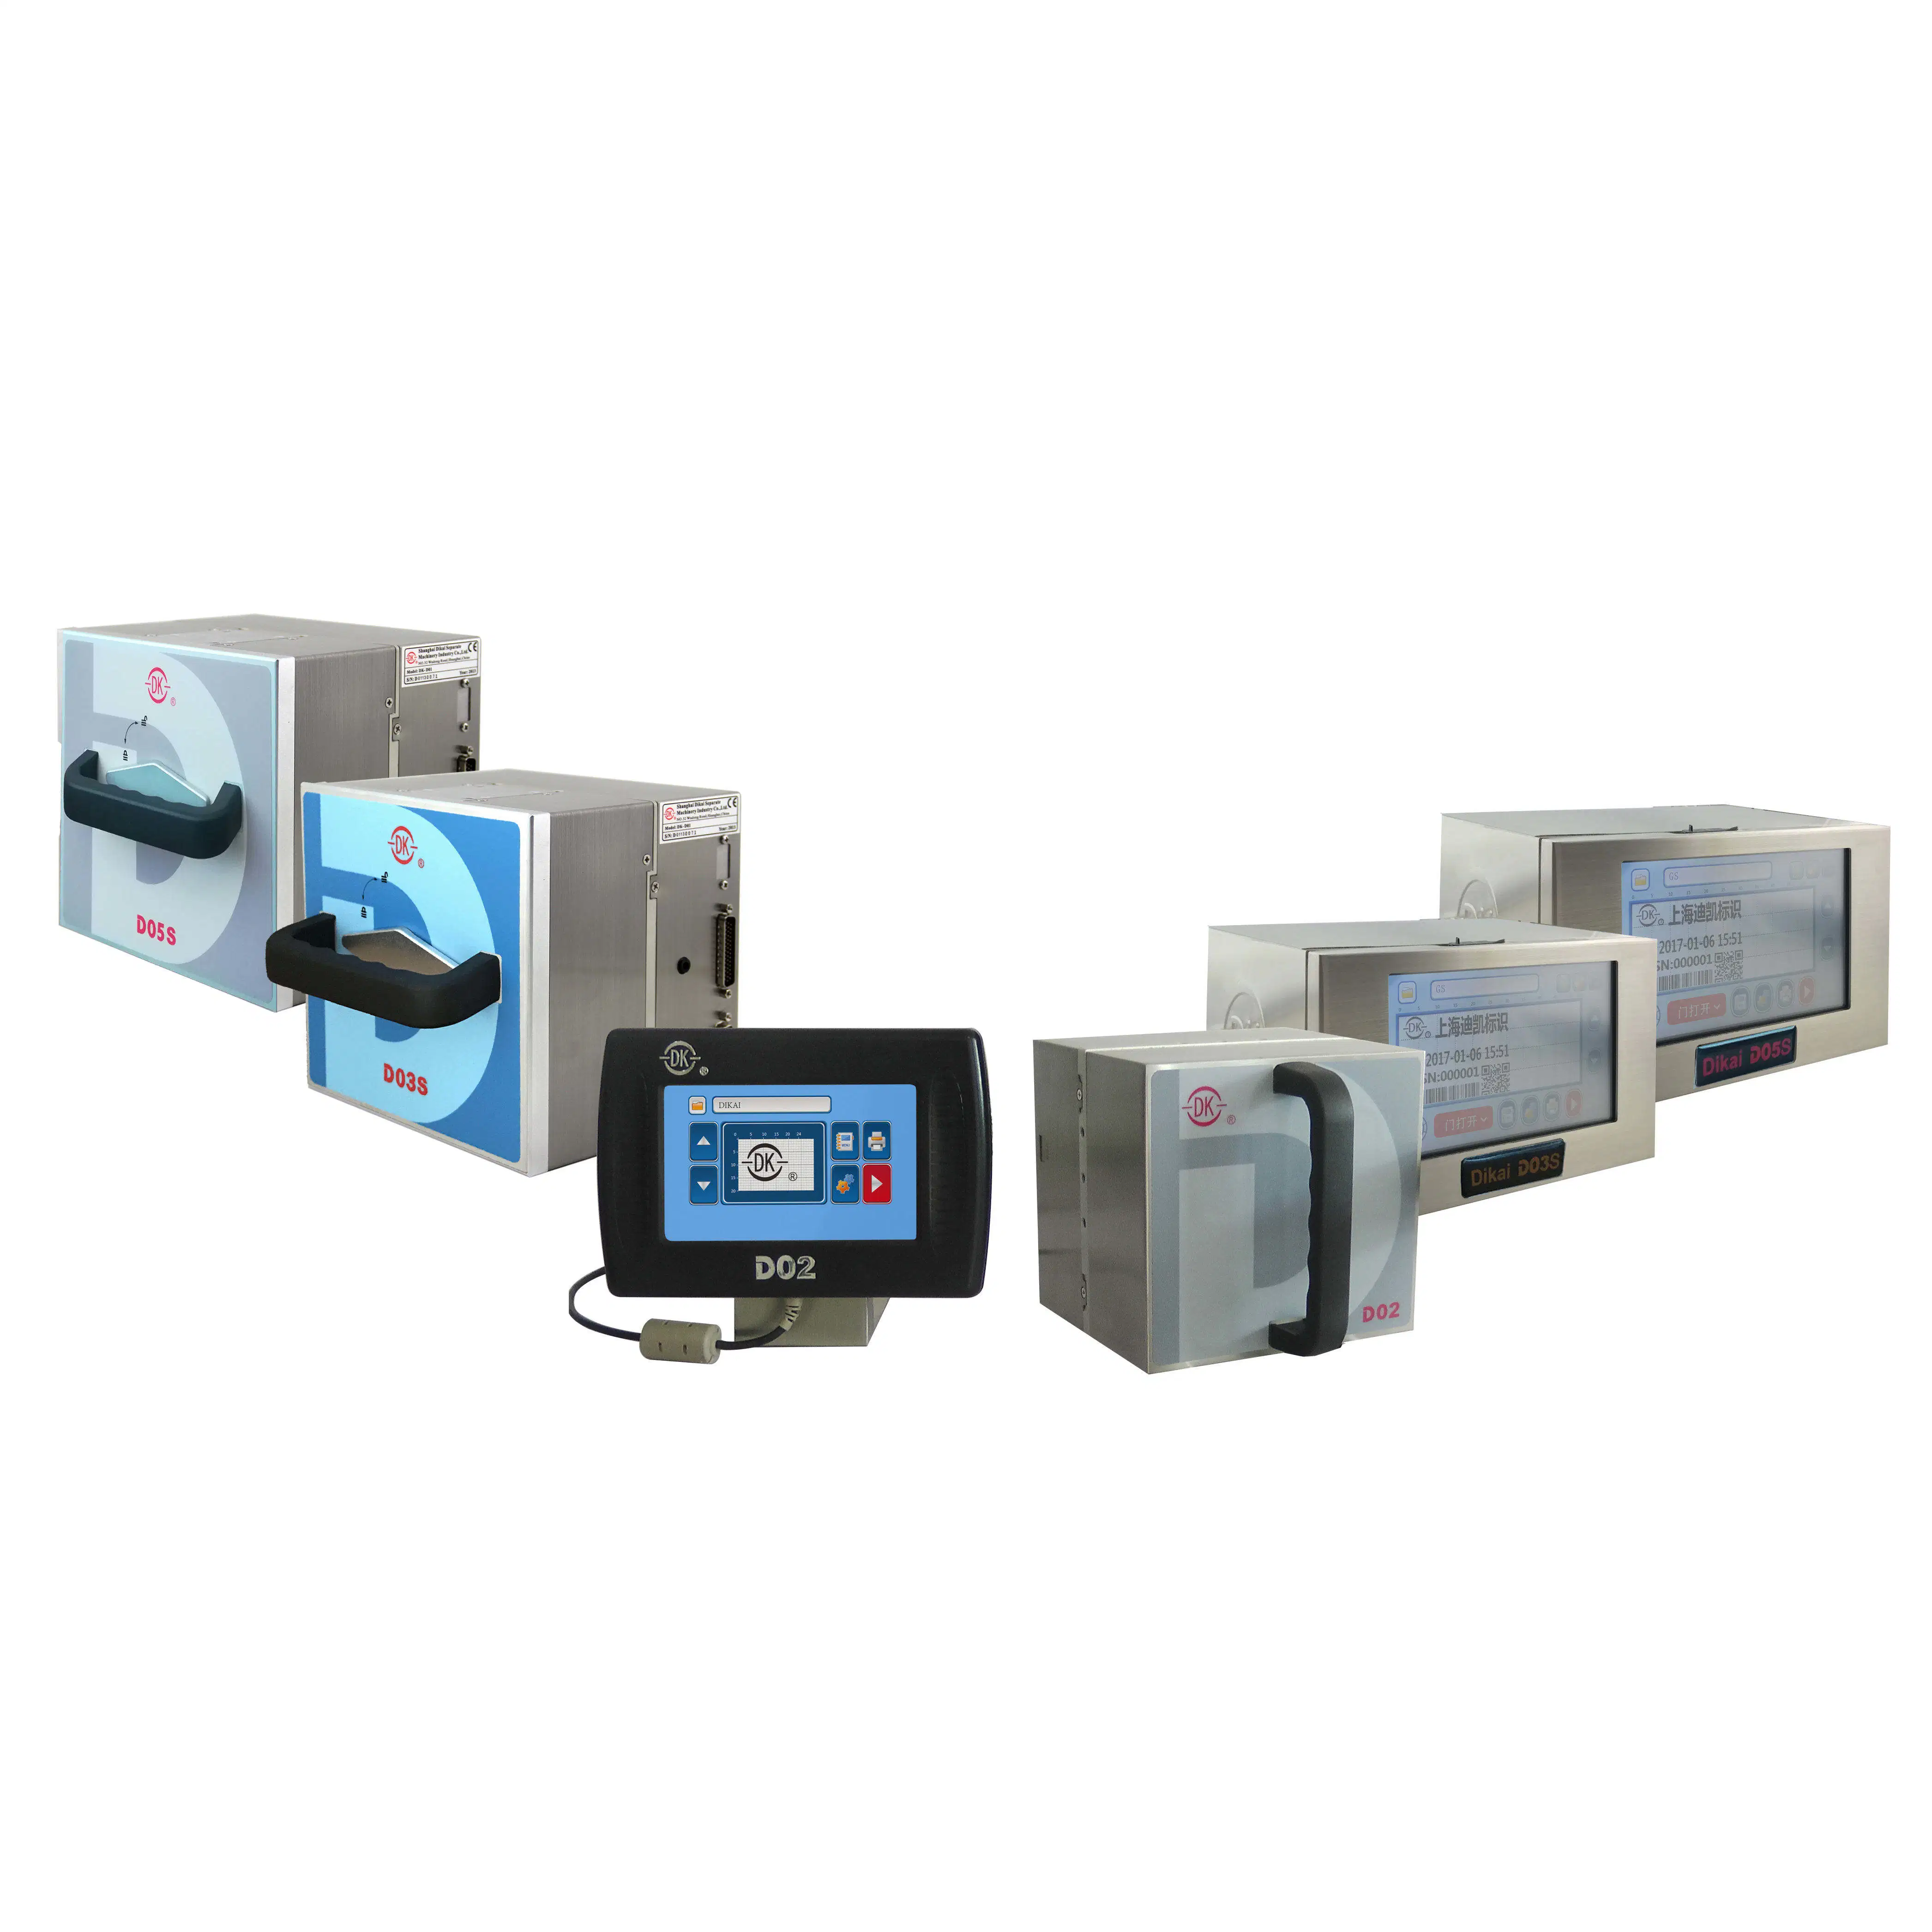 Heißer Verkauf Tto Thermotransferdrucker/ Tto Drucker für Flow Verpackung Maschine / Thermotransfer Überdrucker Preis